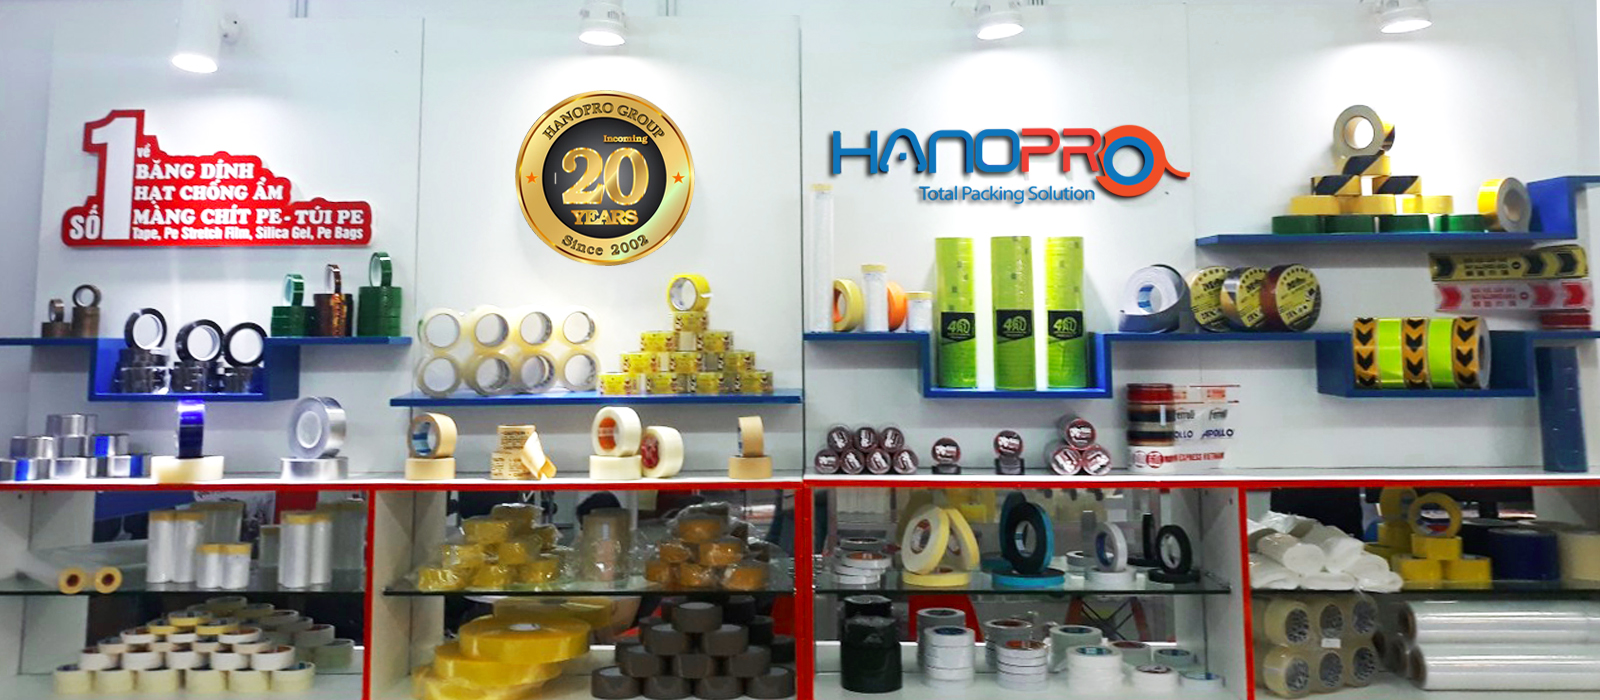 Nhà máy Hanopro ra đời gần 20 năm